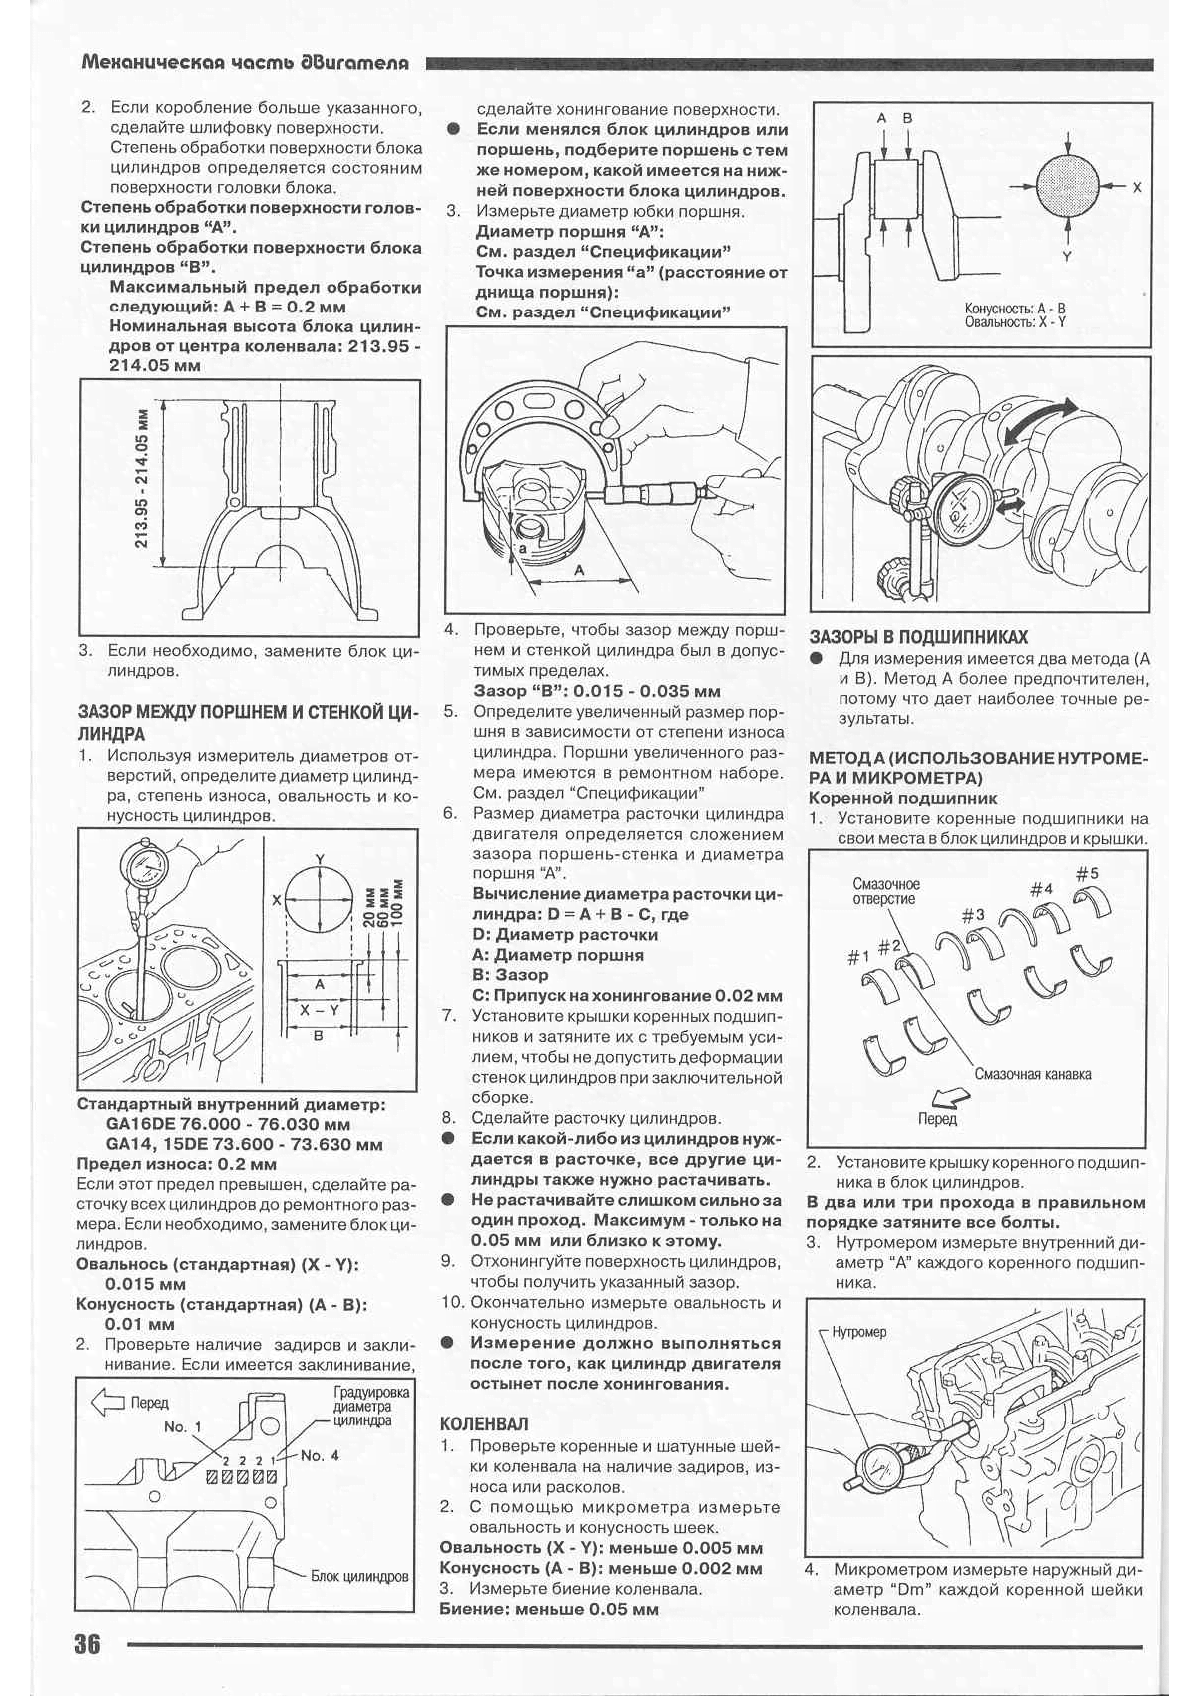 Руководство по ремонту ниссан санни 1991-1997 г.в. полное описание, схемы, фото, технические характеристики